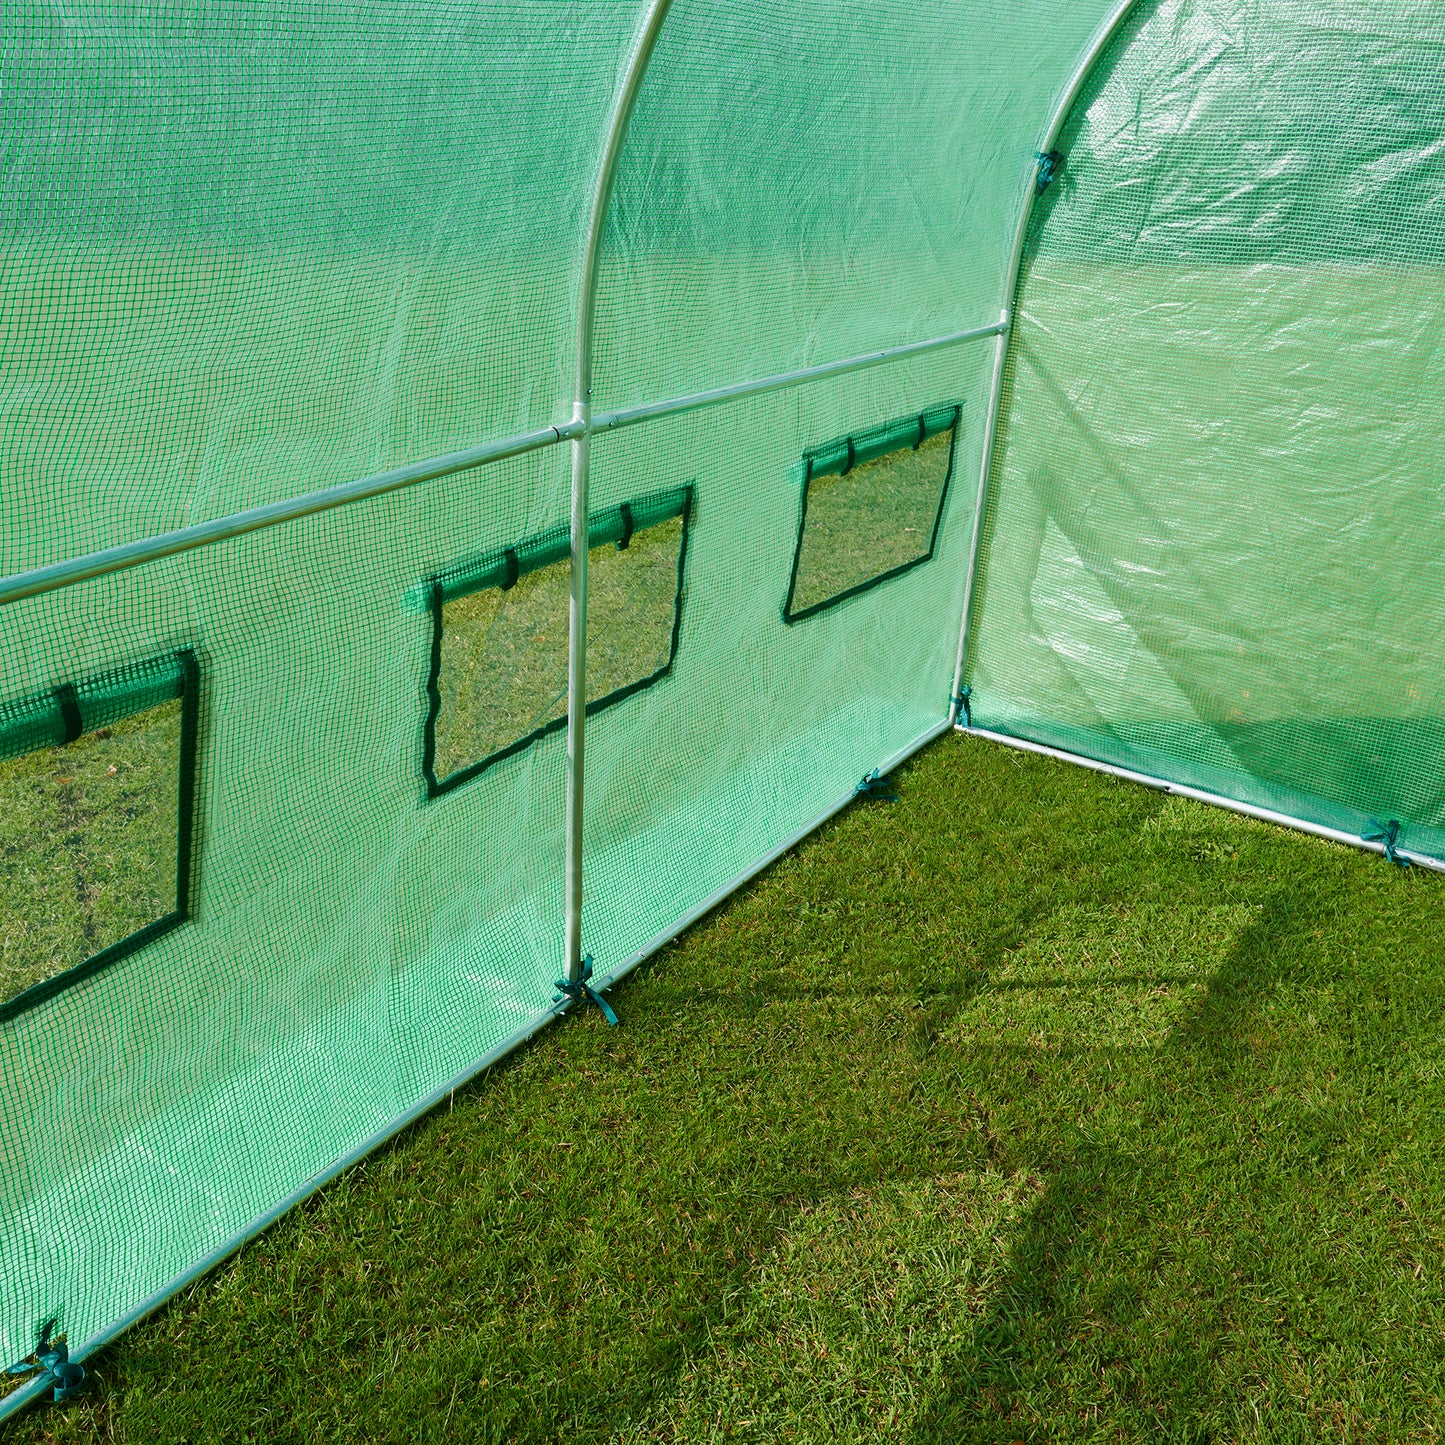 3m Replacement Polytunnel Greenhouse Cover - Zip Door